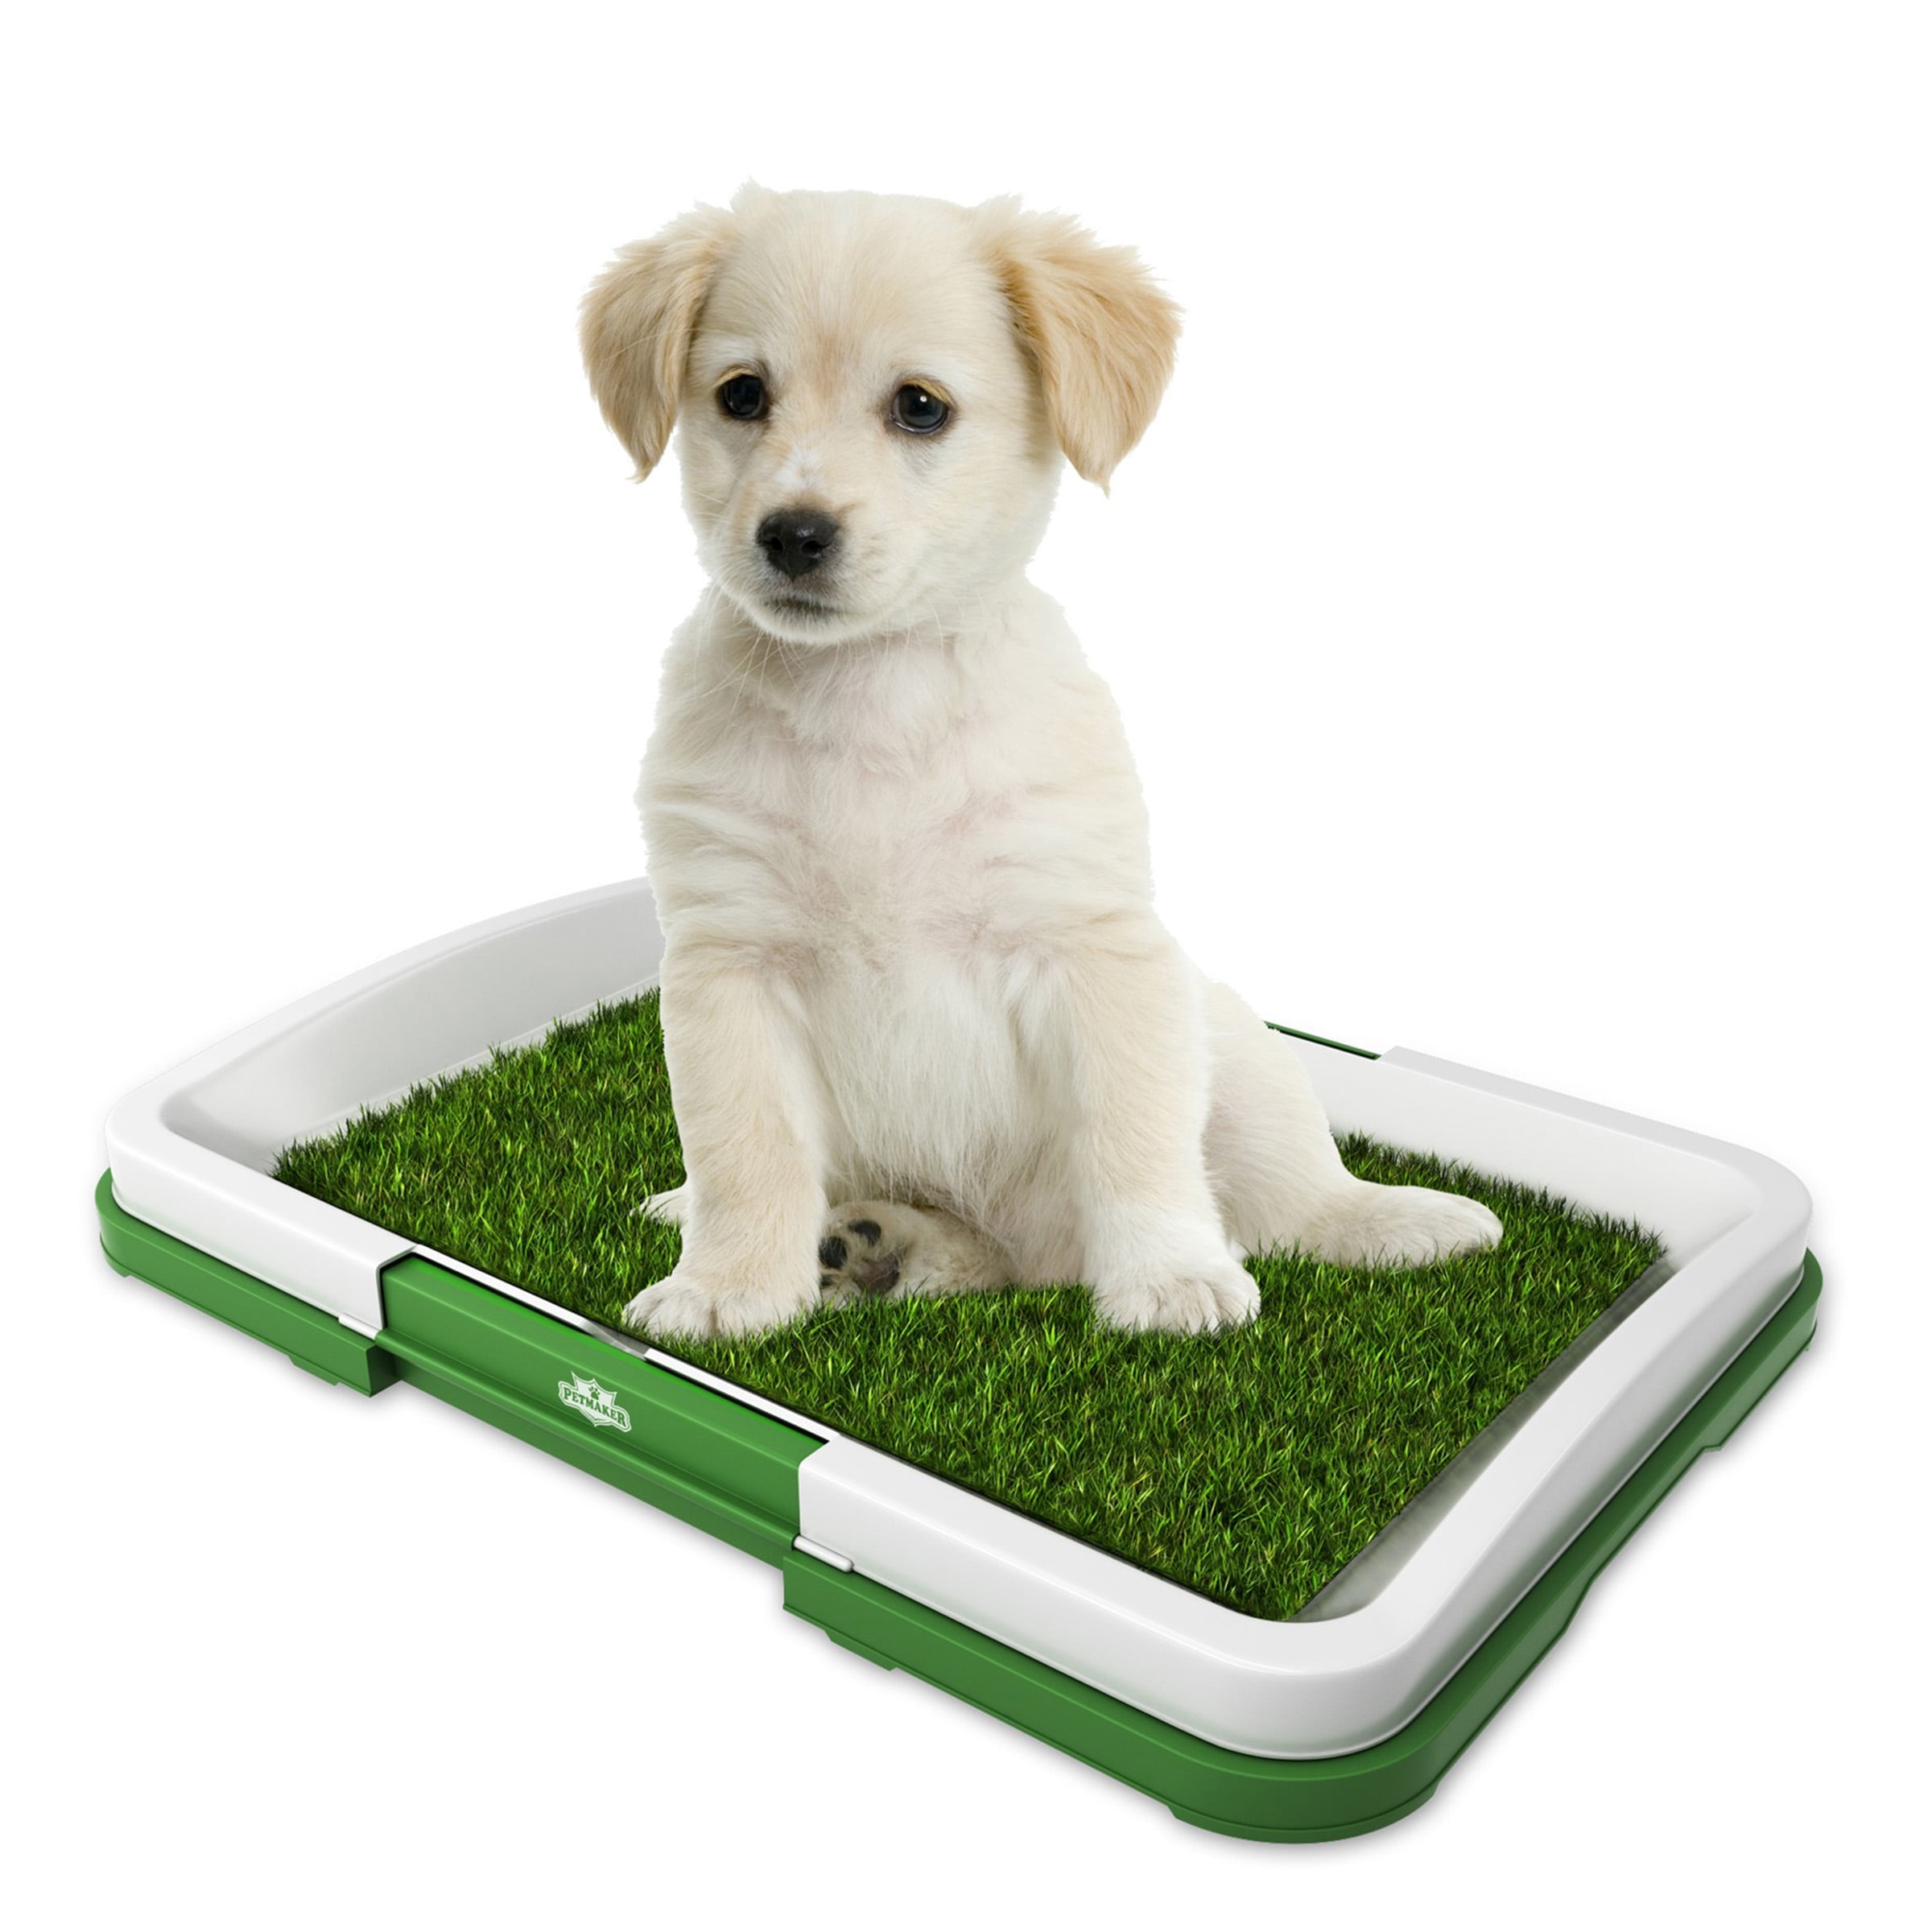 16770円 限定モデル CDHPET Pet Potty Dog Grass Pee Pad Artificial for Dogs Po